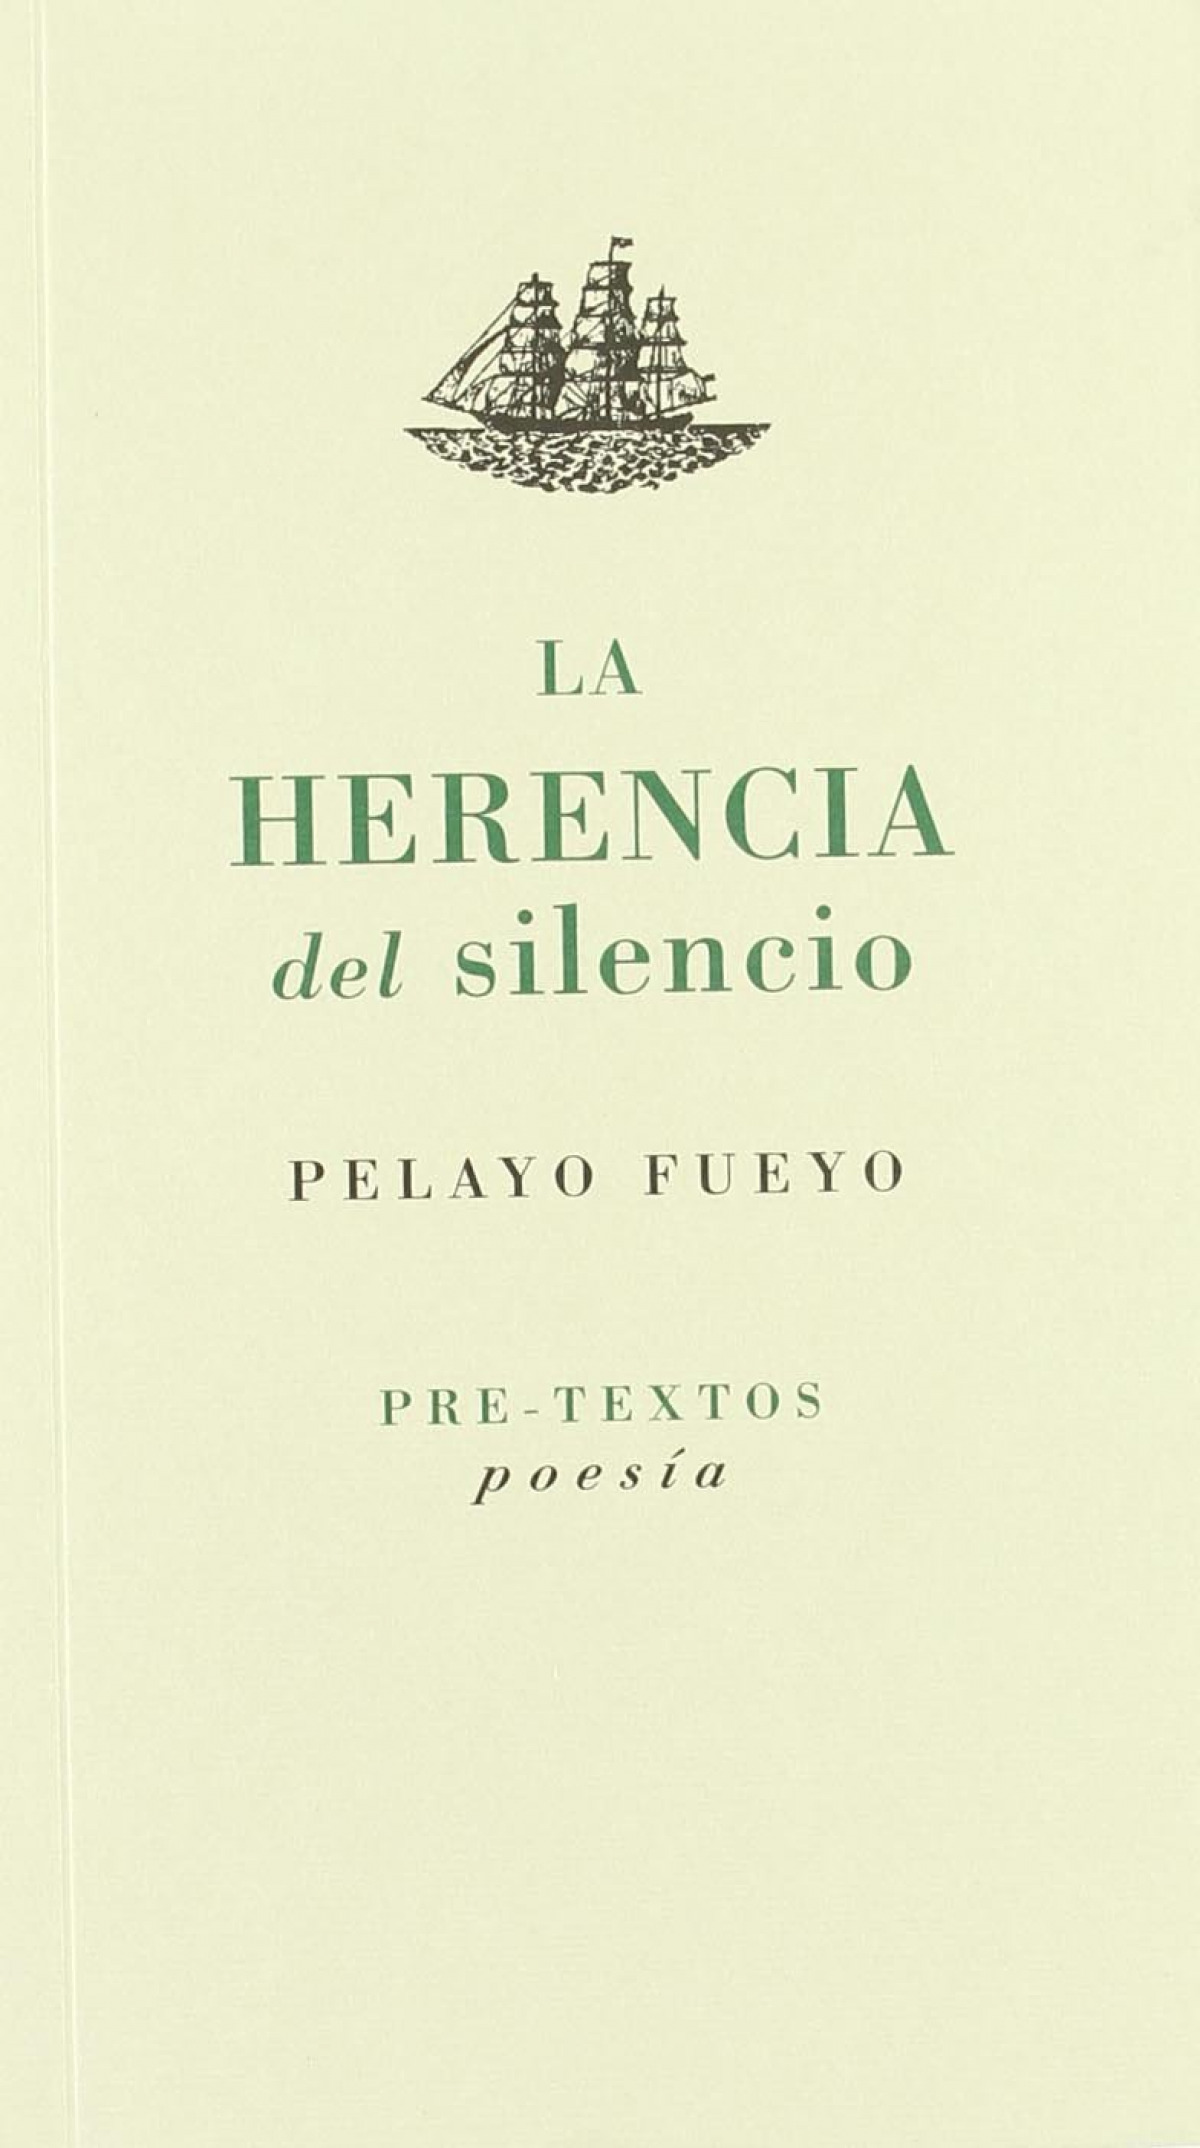 áLa herencia del silencio - Fueyo, Pelayo